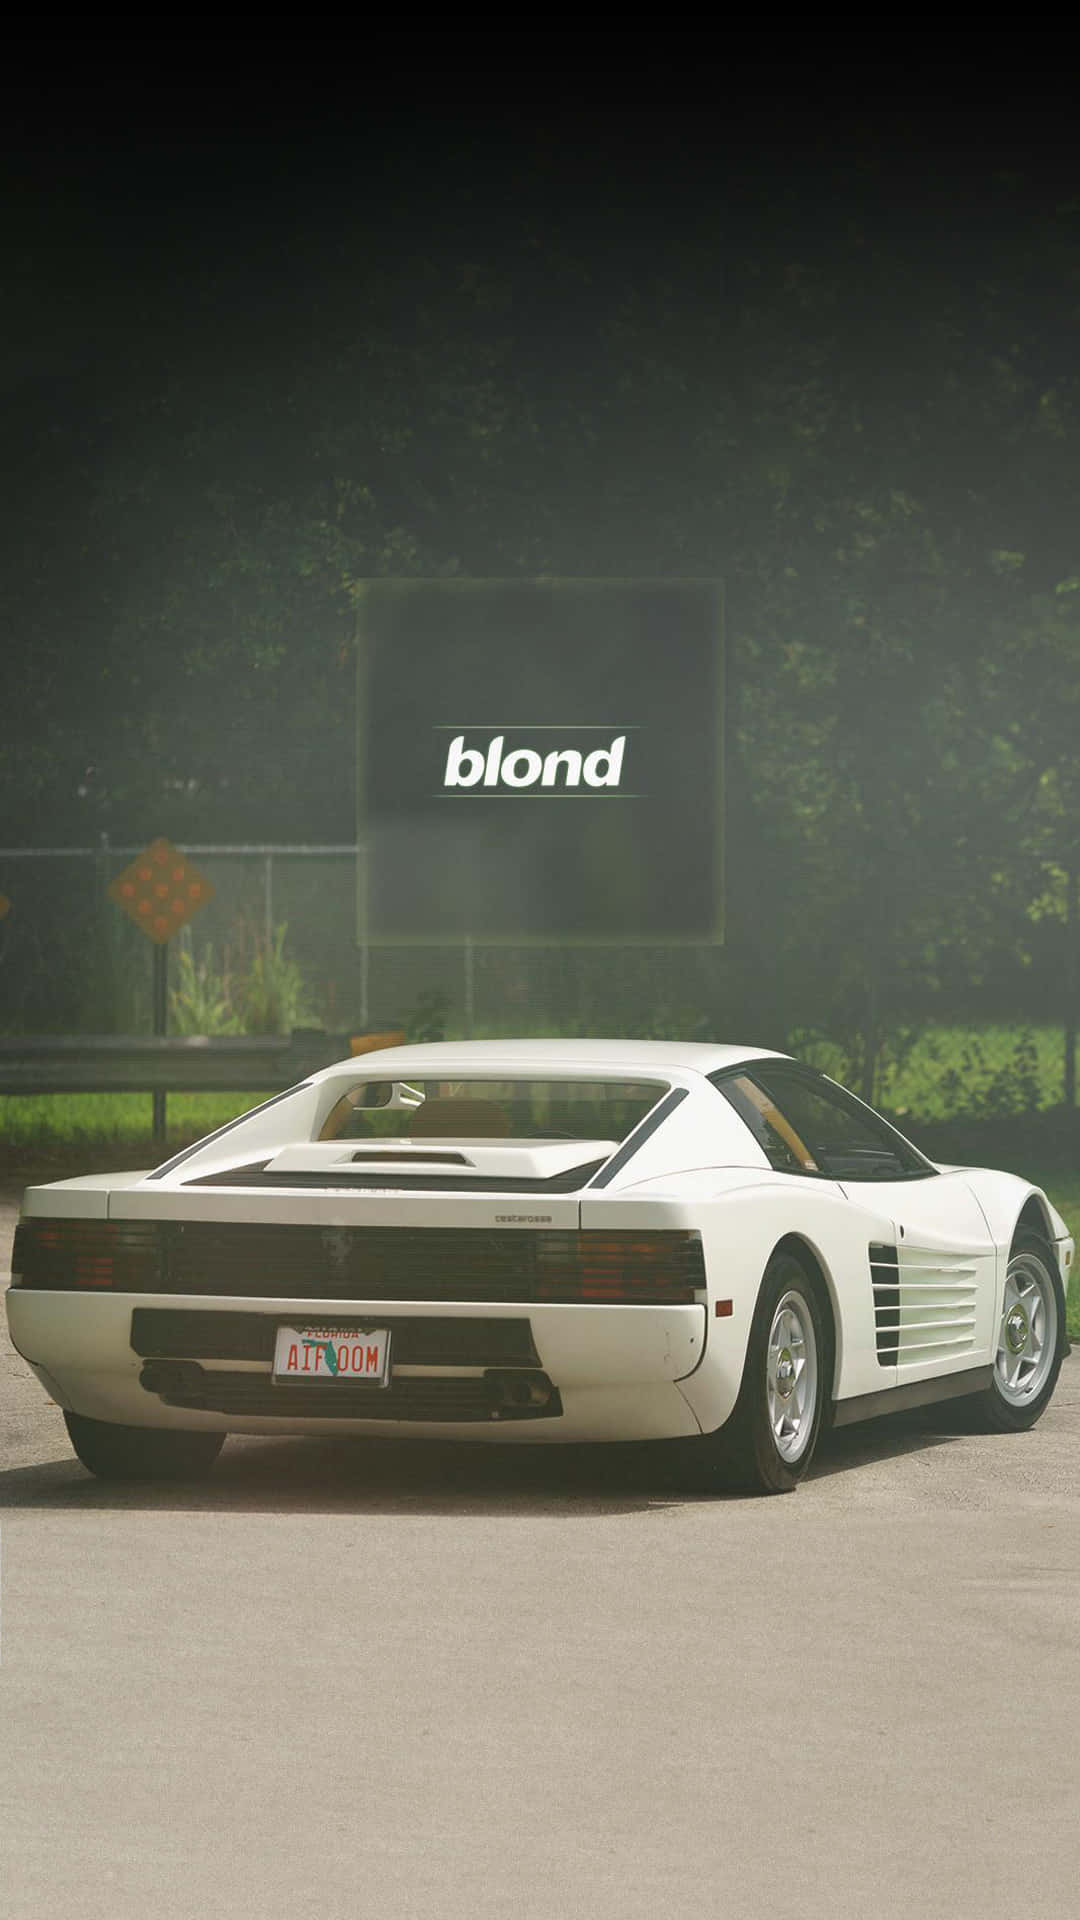 Nyddet Perfekte Hvide Og Hvide Look Med Denne Fantastiske Baggrund Af En Hvid Ferrari. Wallpaper